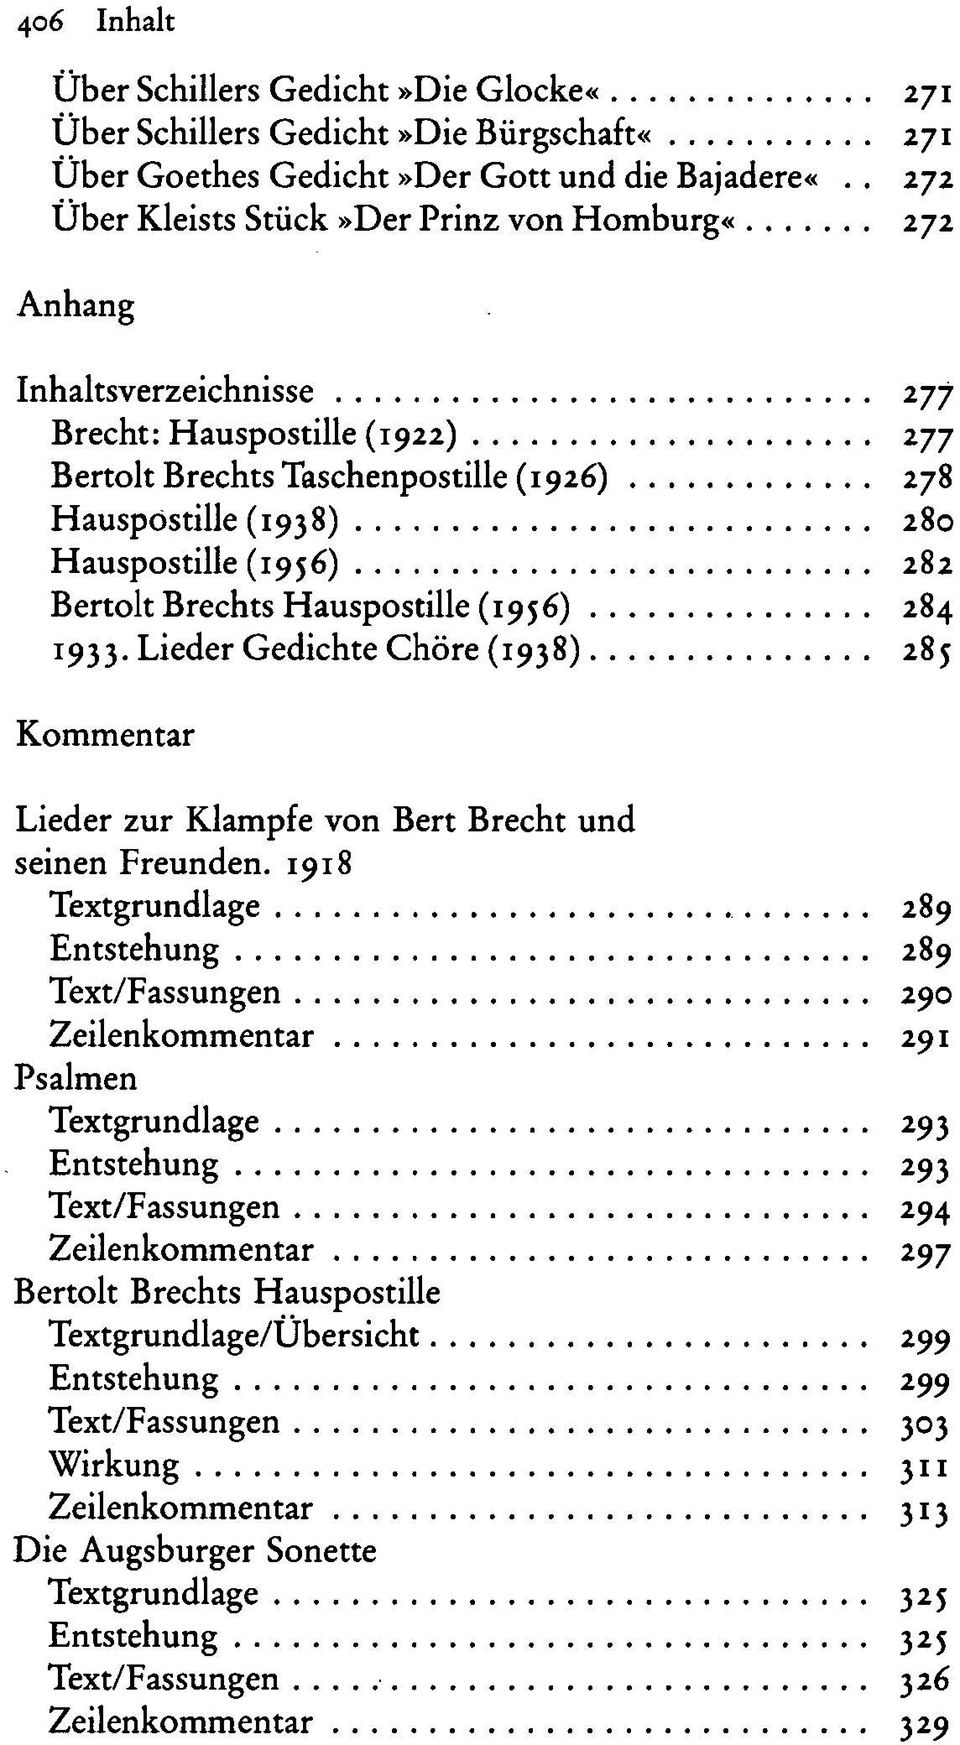 (1956) 282 Bertolt Brechts Hauspostille (1956) 284 1933. Lieder Gedichte Chöre (1938) 285 Kommentar Lieder zur Klampfe von Bert Brecht und seinen Freunden.